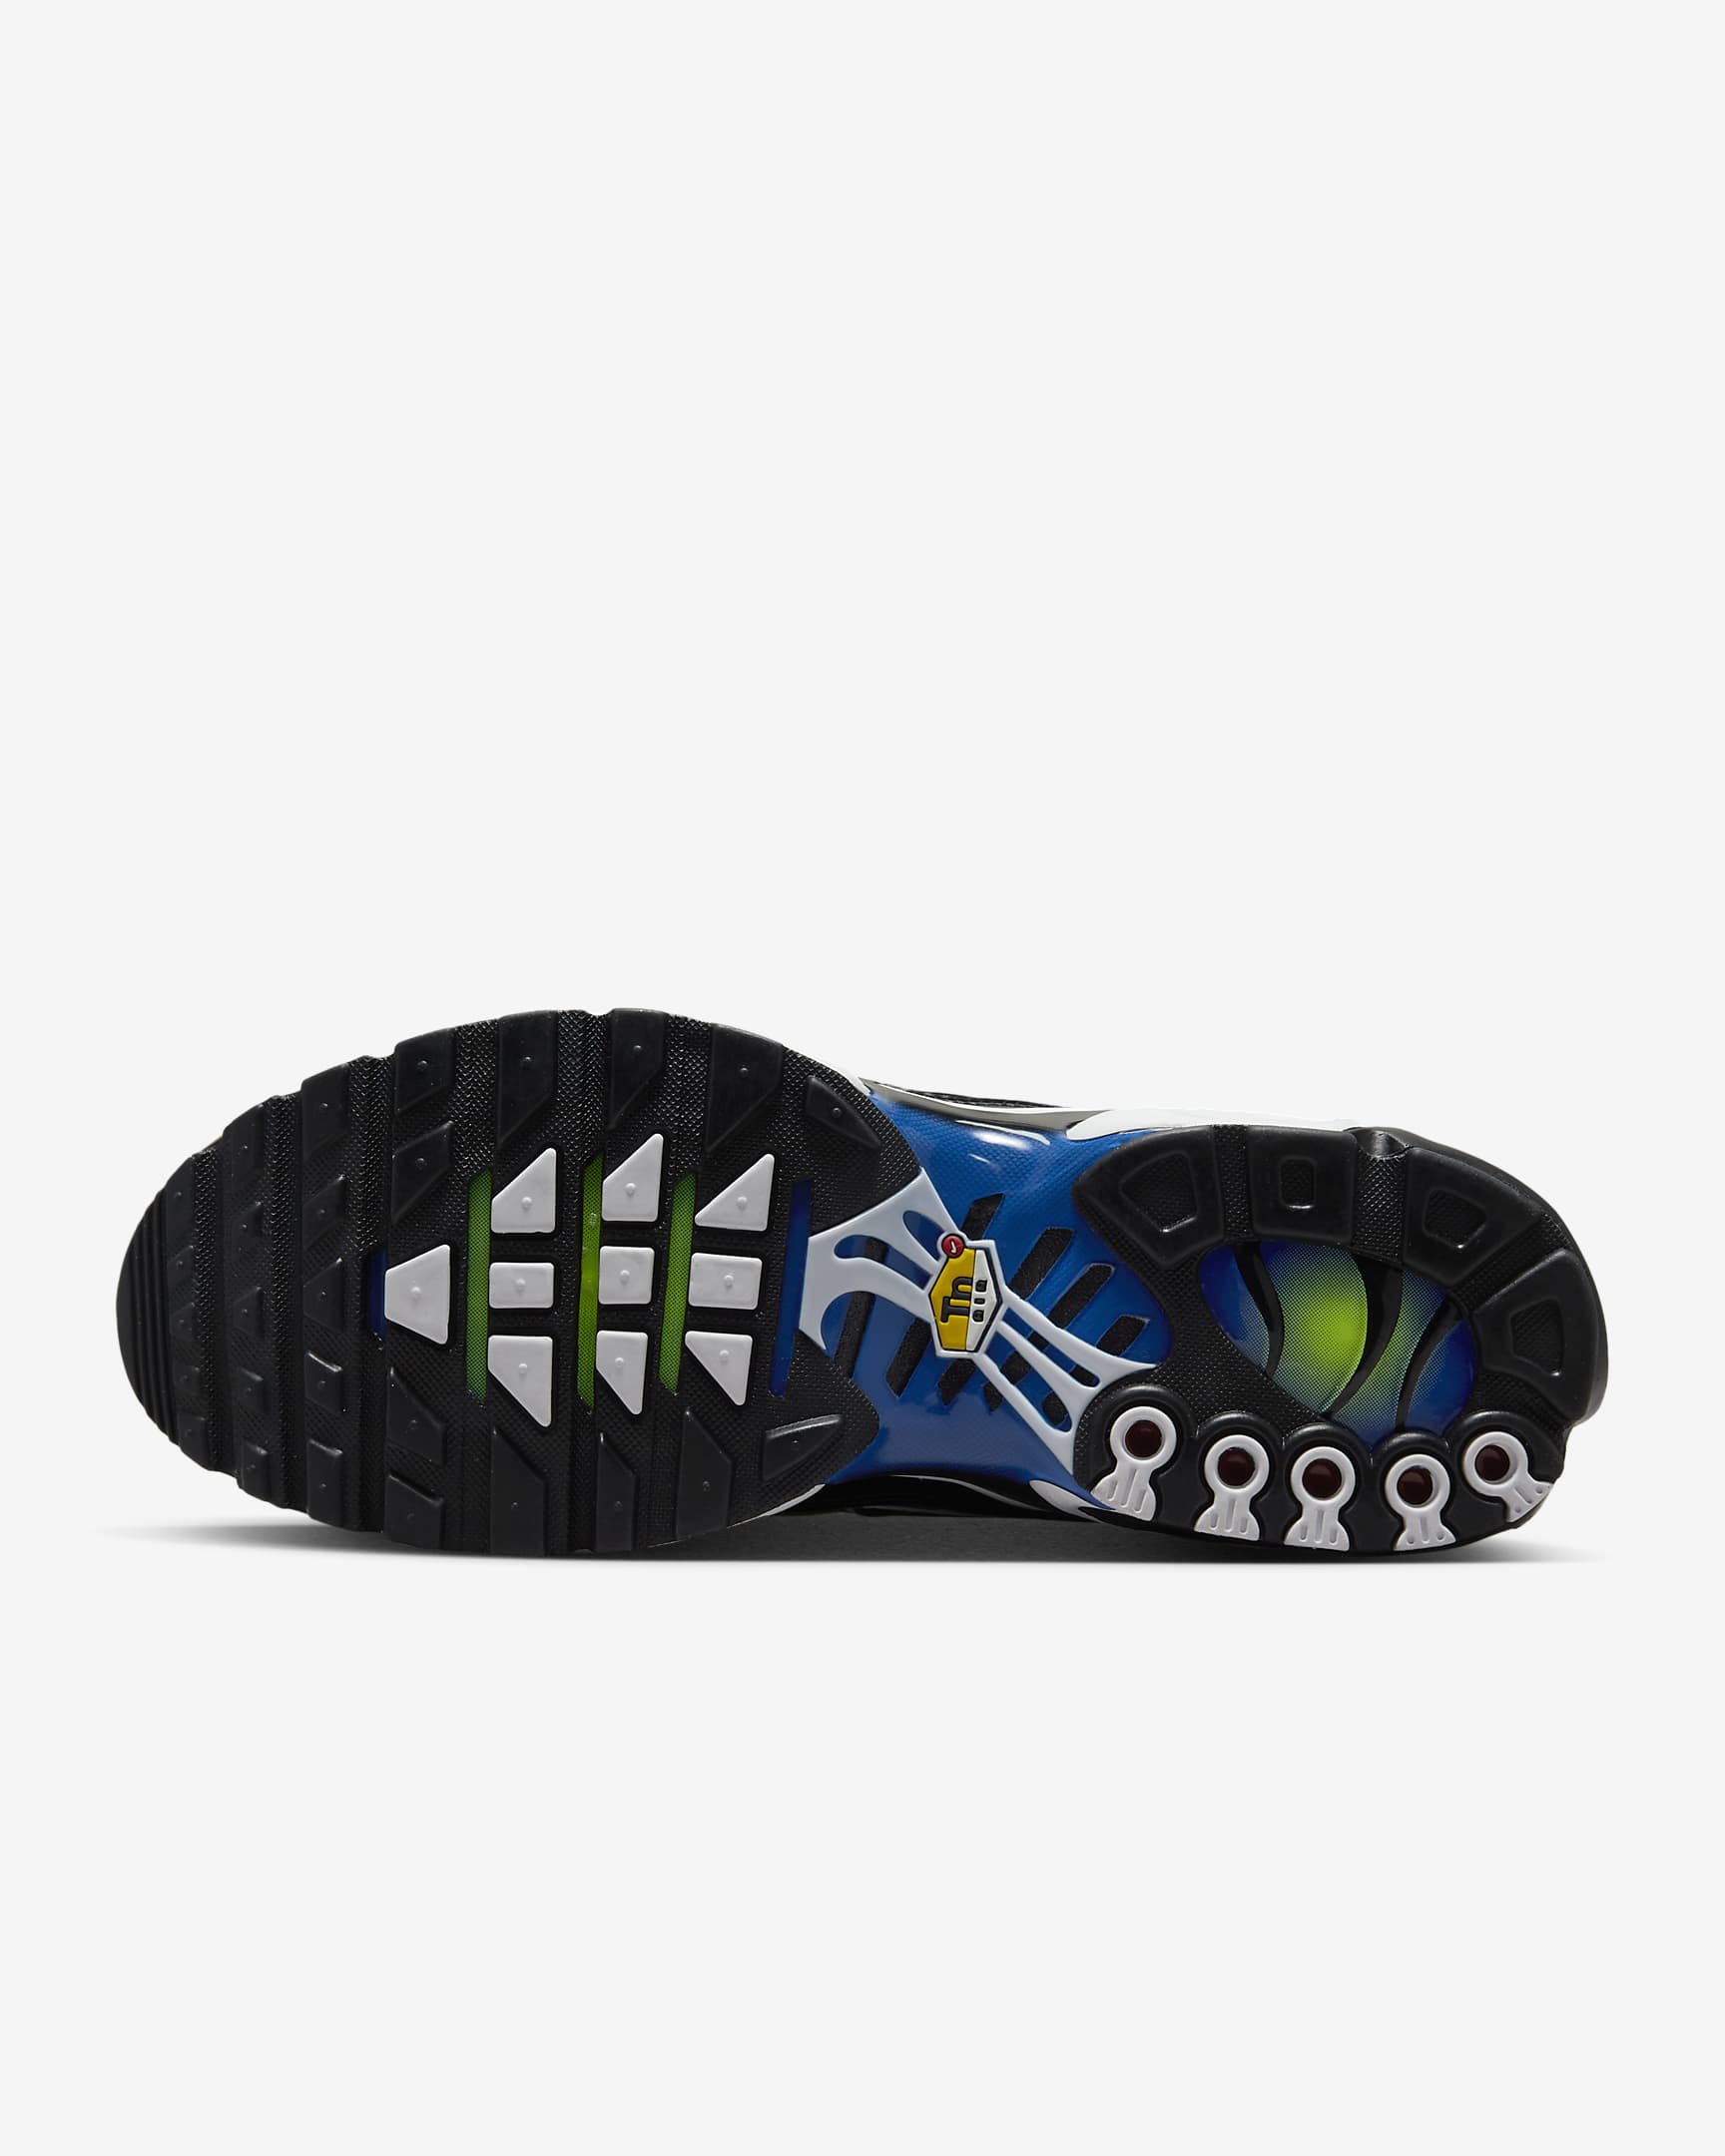 Nike Air Max Plus Men's Shoes - Black/Racer Blue/Volt/Black